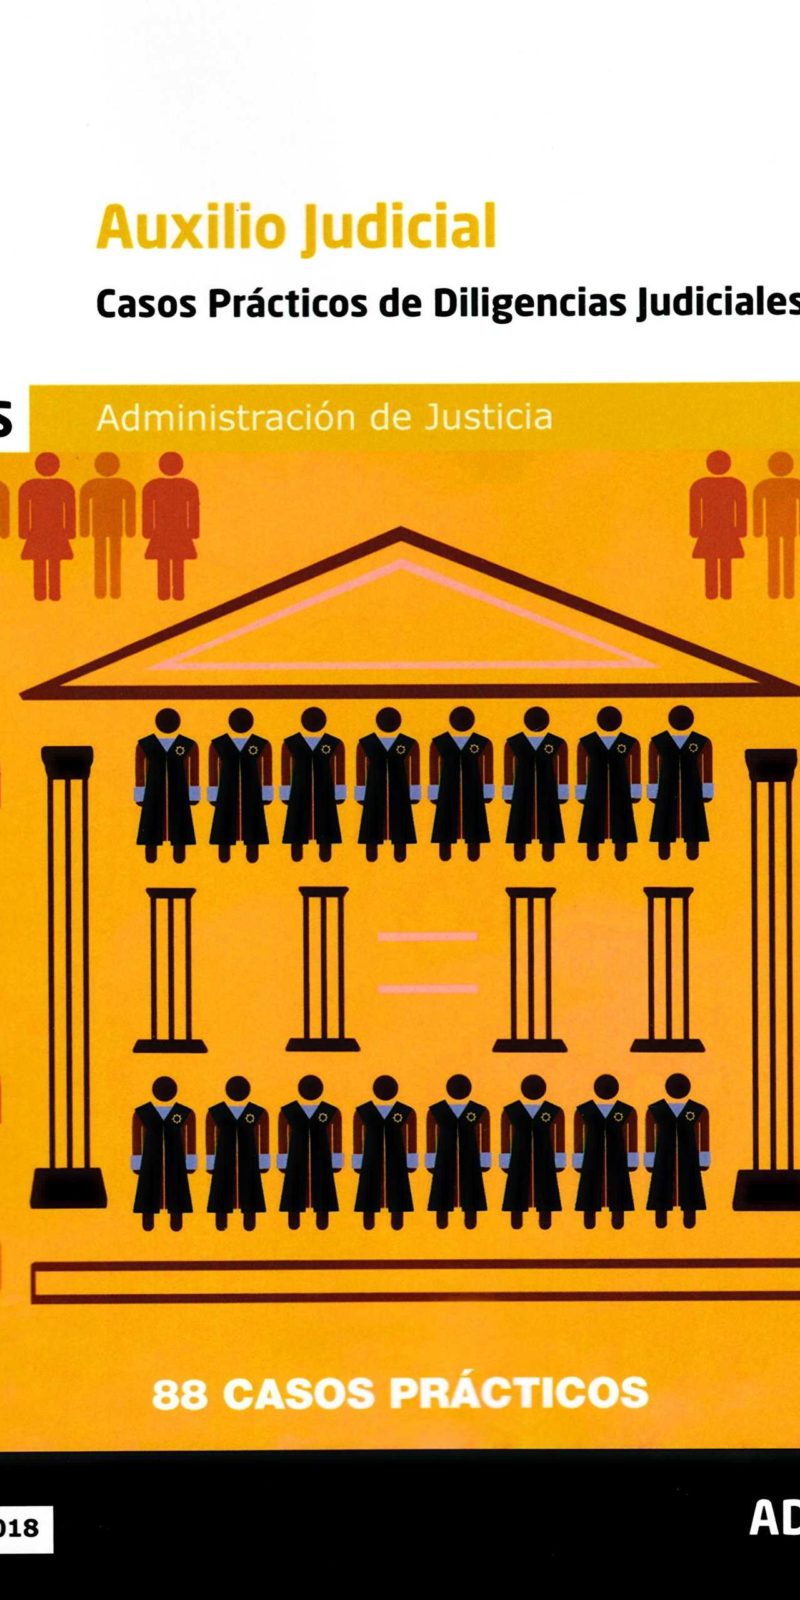 AUXILIO JUDICIAL CASOS PRÁCTICOS DE DILIGENCIAS JUDICIALES